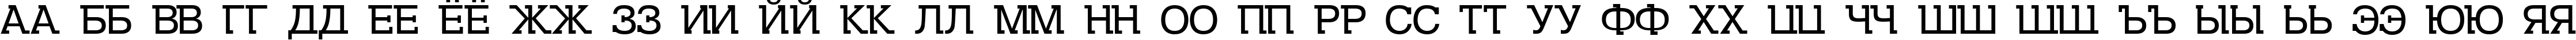 Пример написания русского алфавита шрифтом DS Kolovrat